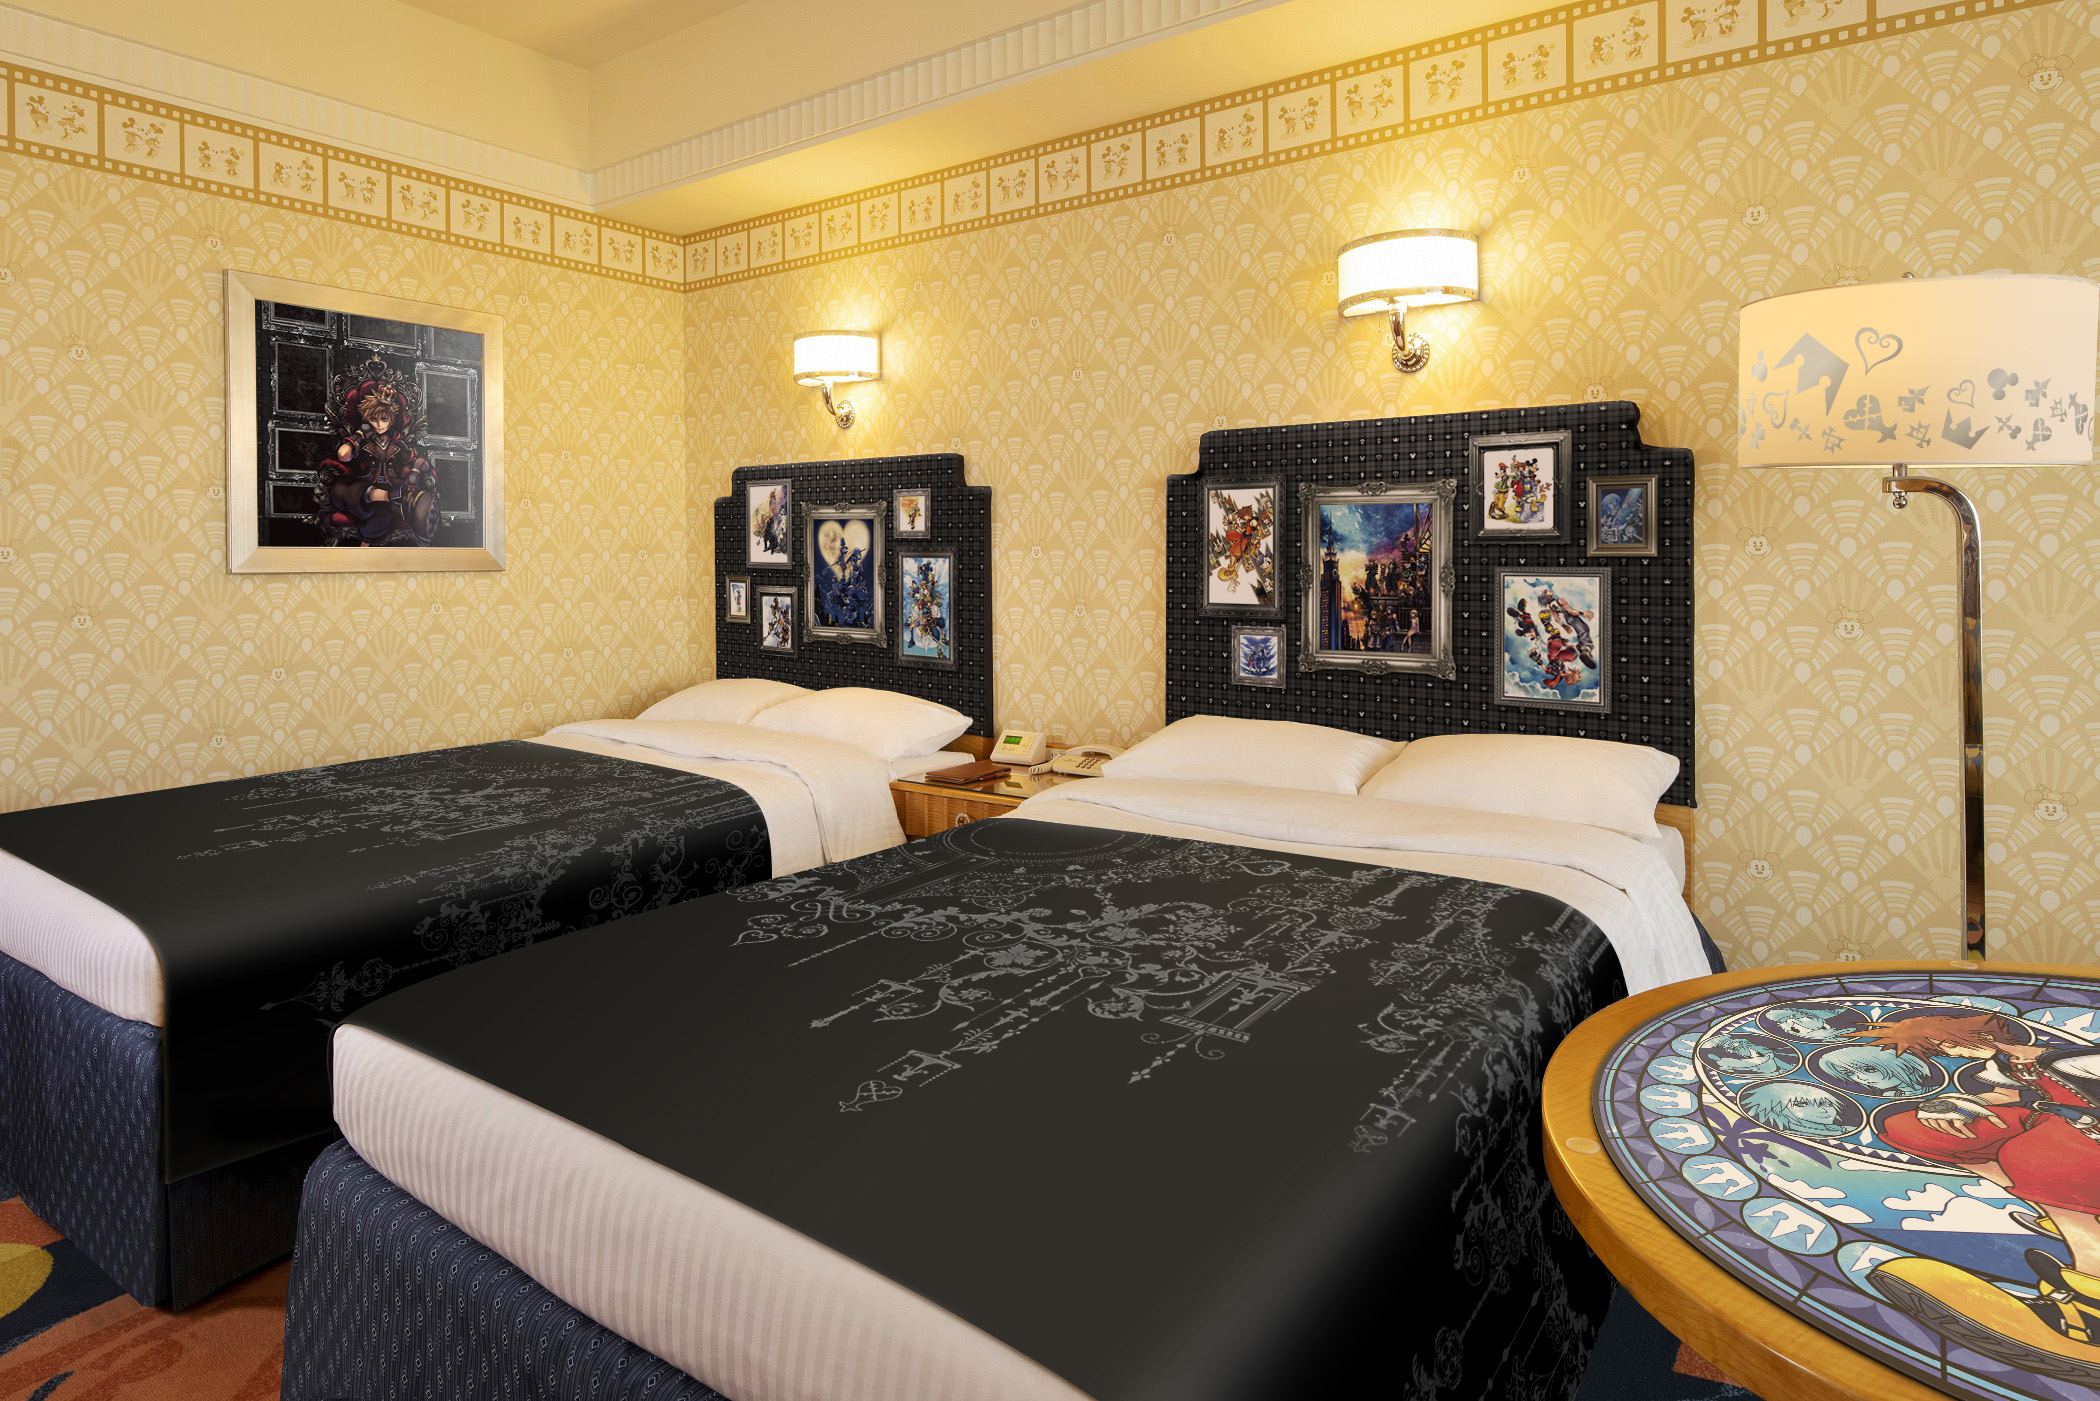 ディズニーアンバサダーホテル、「キングダム ハーツ」の客室が再登場 